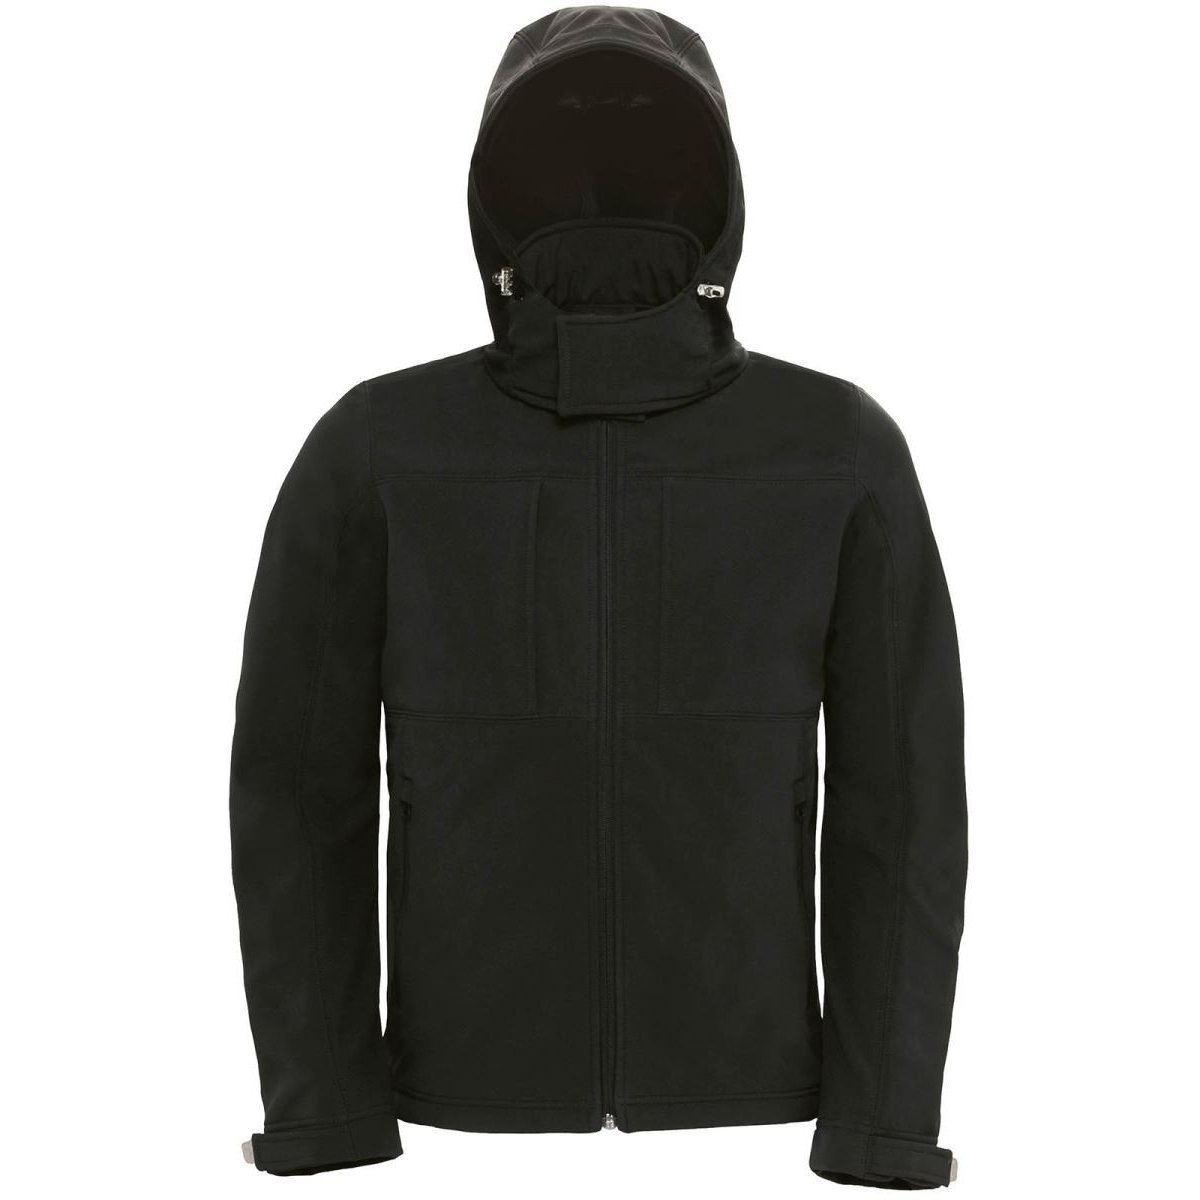 Pánská softshellová bunda s kapucí B&C Hooded Softshell - černá, XXL